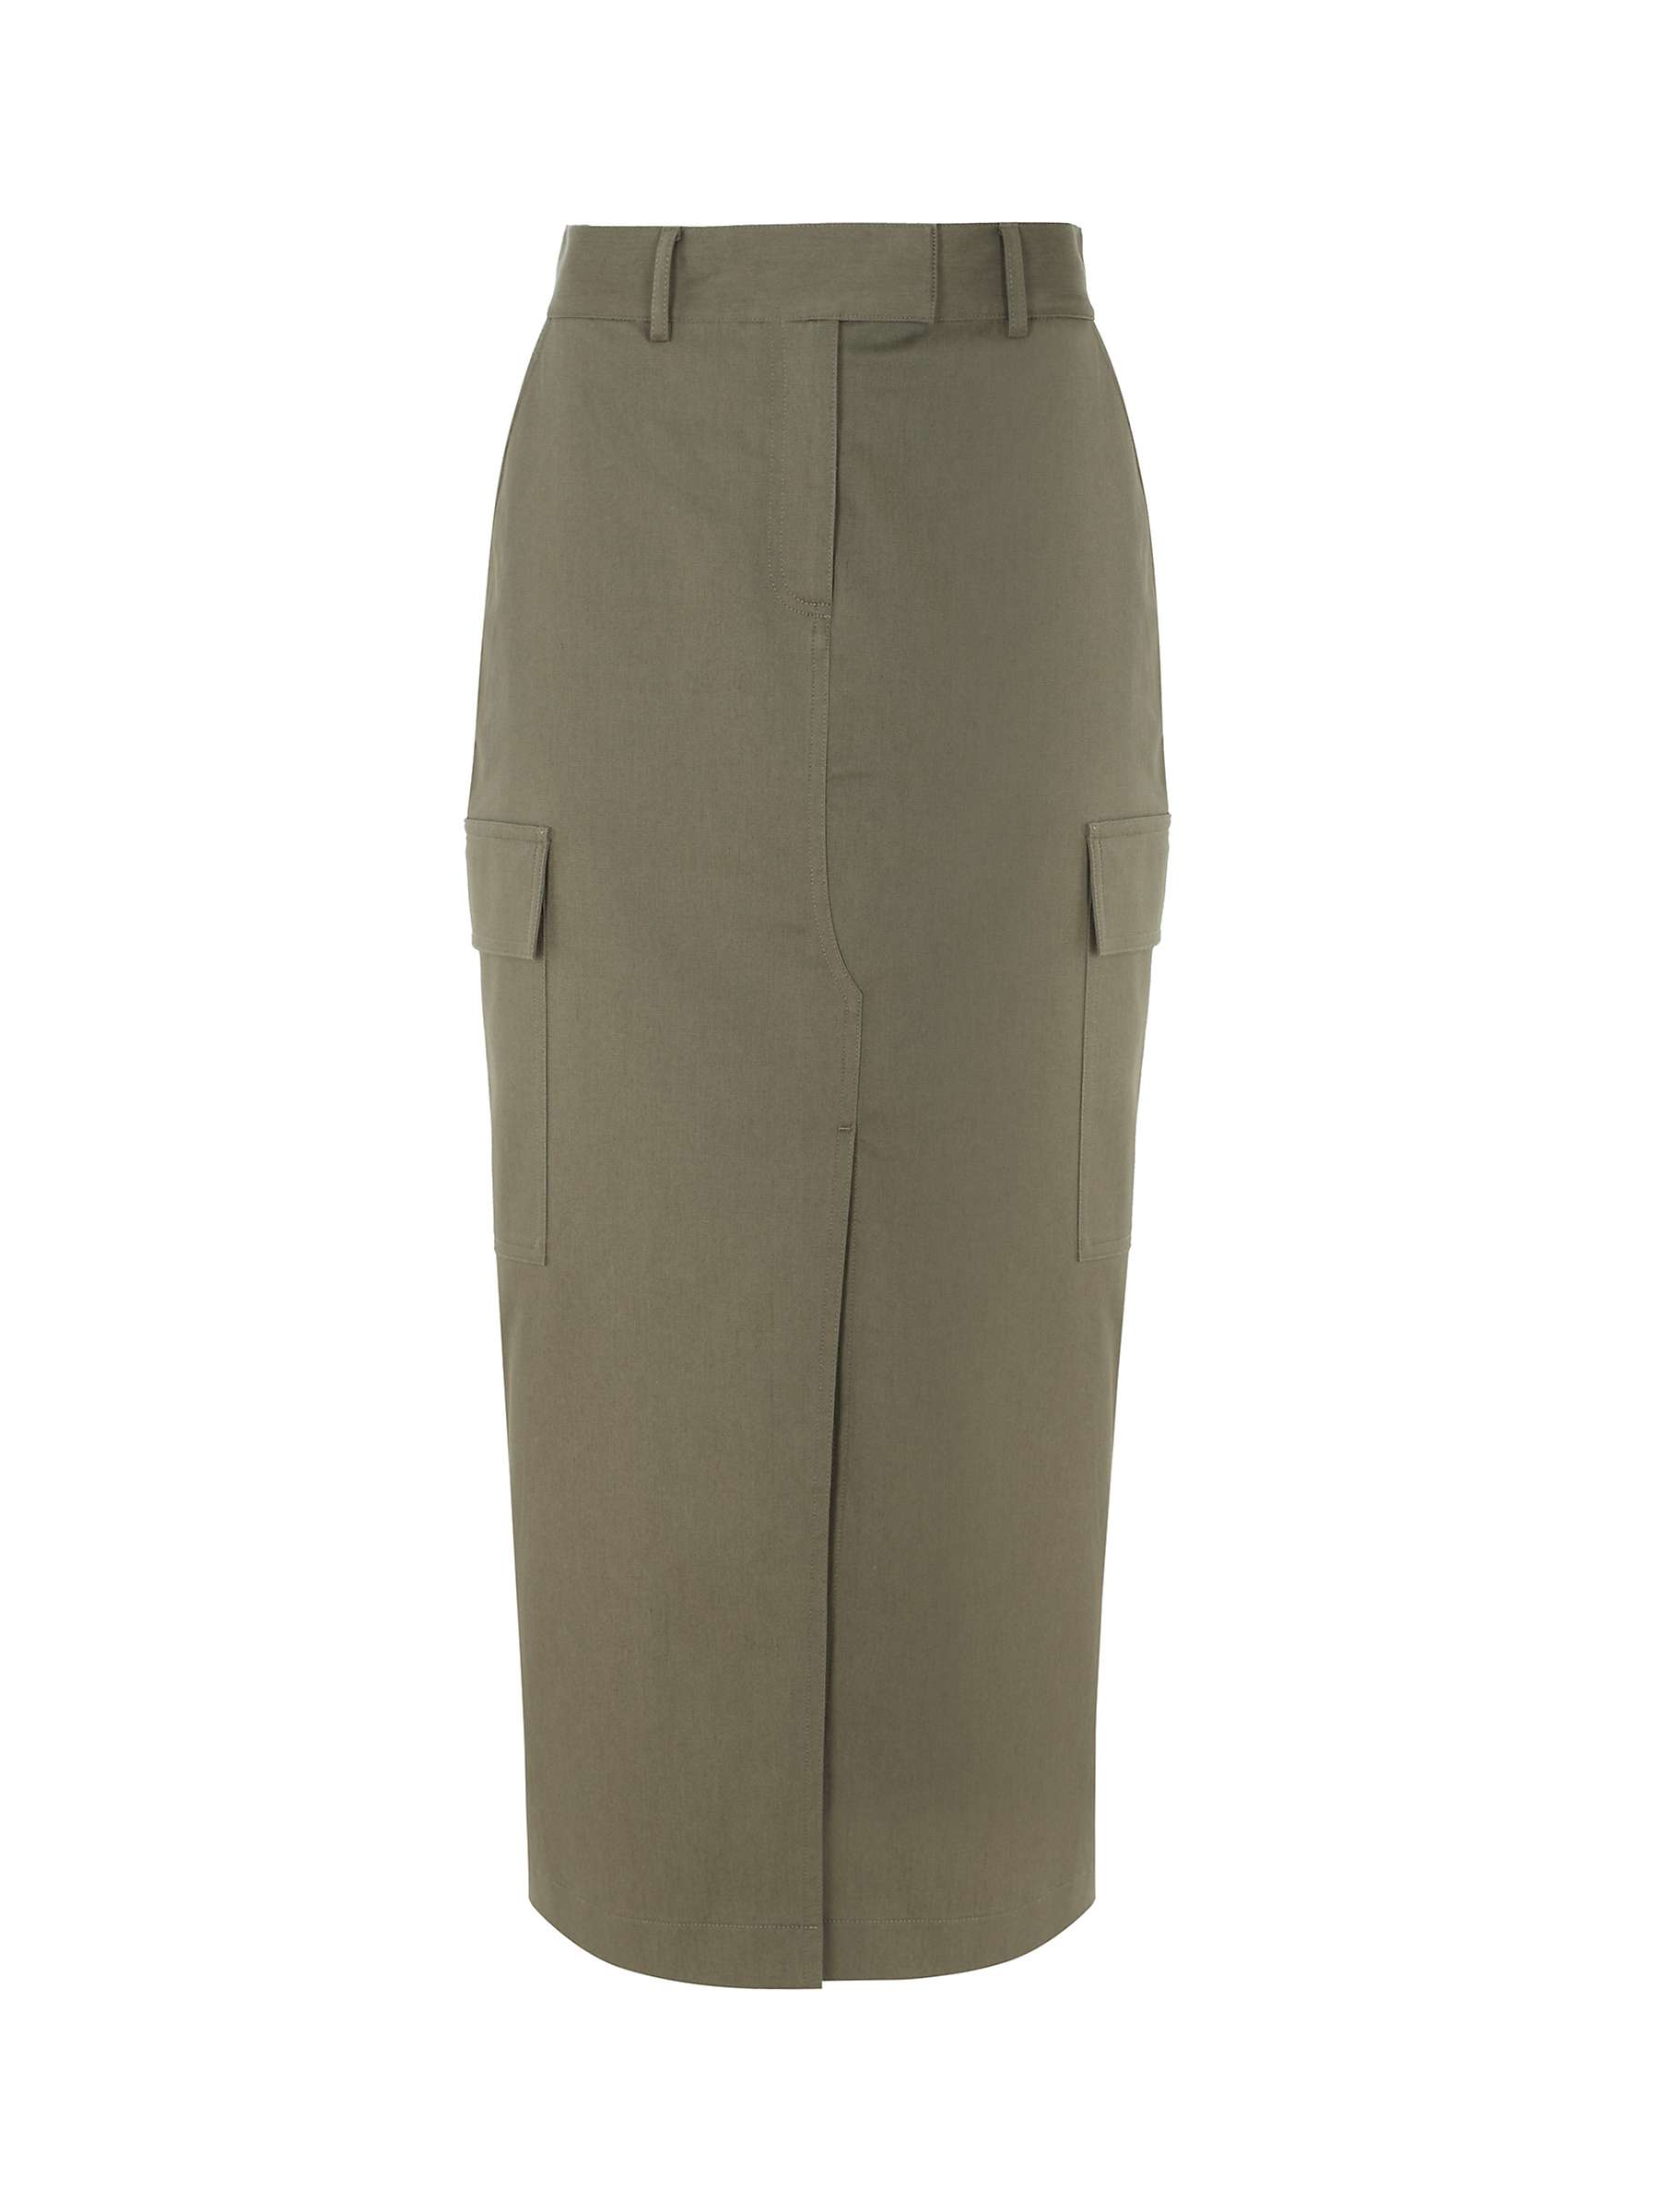 Buy Mint Velvet Cotton Cargo Skirt, Khaki Online at johnlewis.com